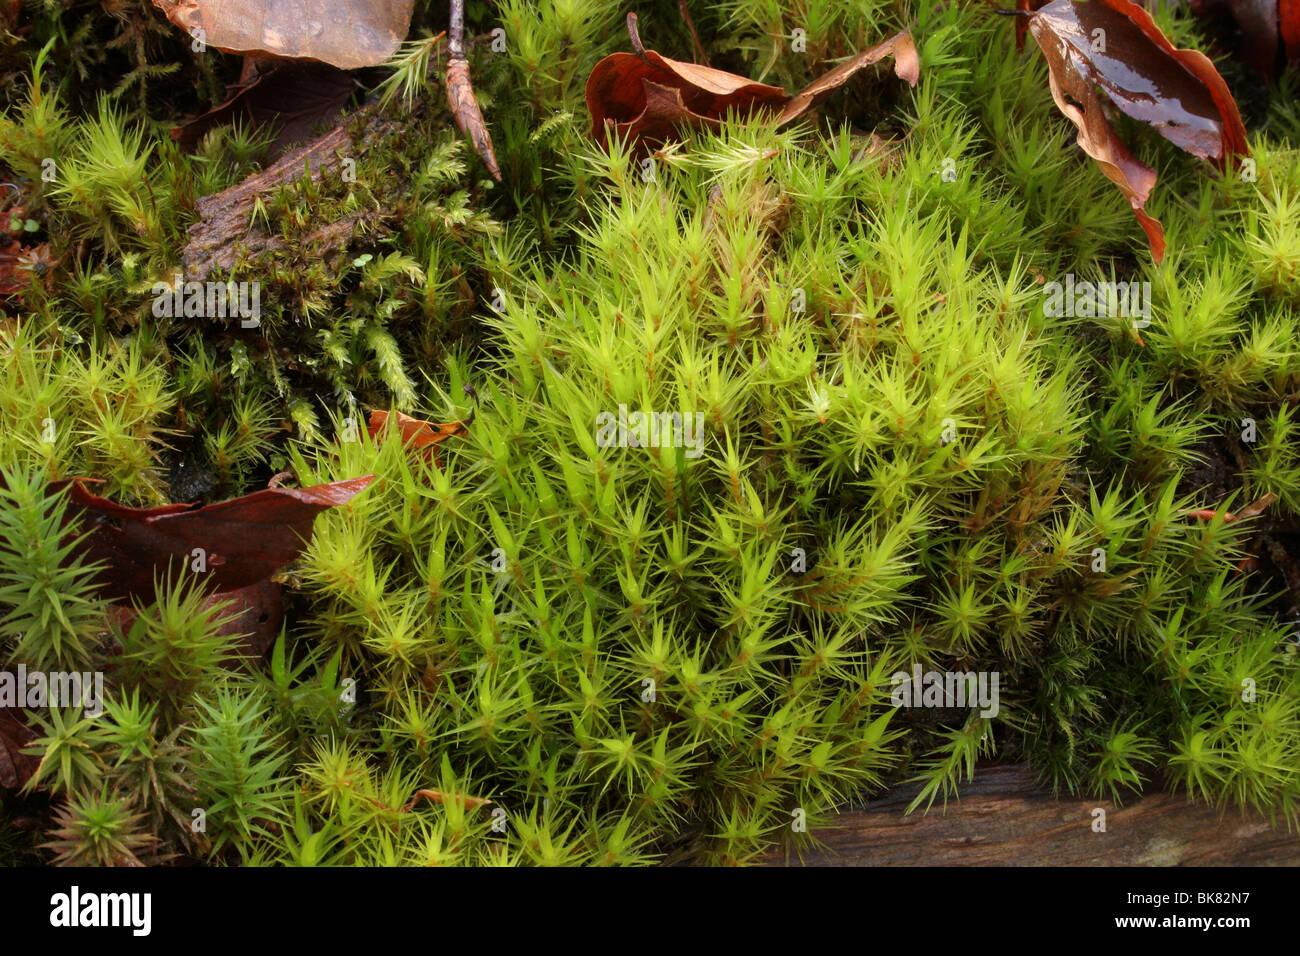 broom-fork-moss-dicranum-scoparium-a-bryophyte-moss-on-a-rotten-log-BK82N7.jpg